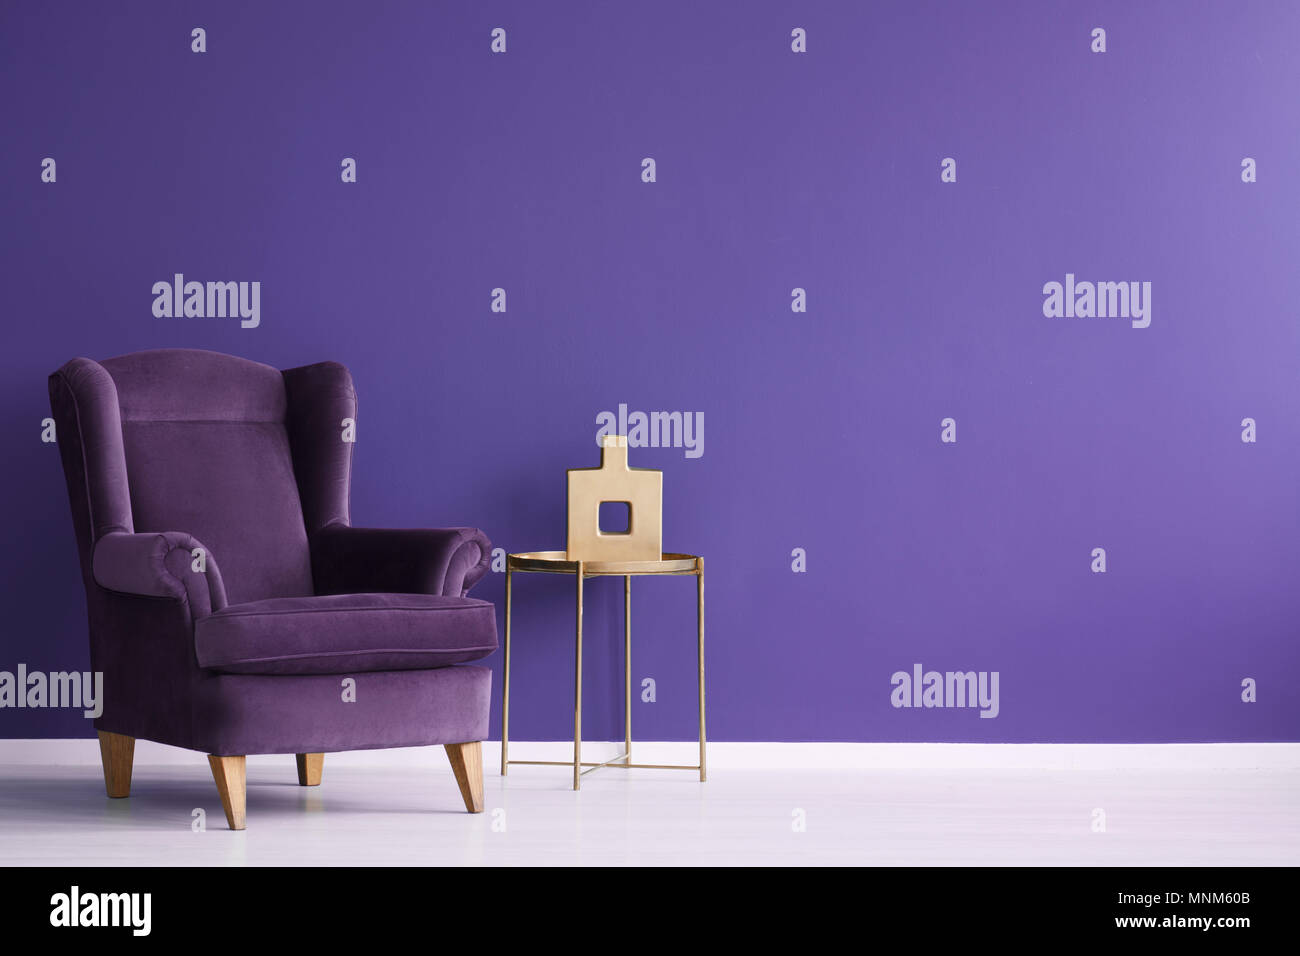 Vase sur la table d'or à côté d'un fauteuil en velours pourpre violet minimal intérieur salon with copy space Banque D'Images